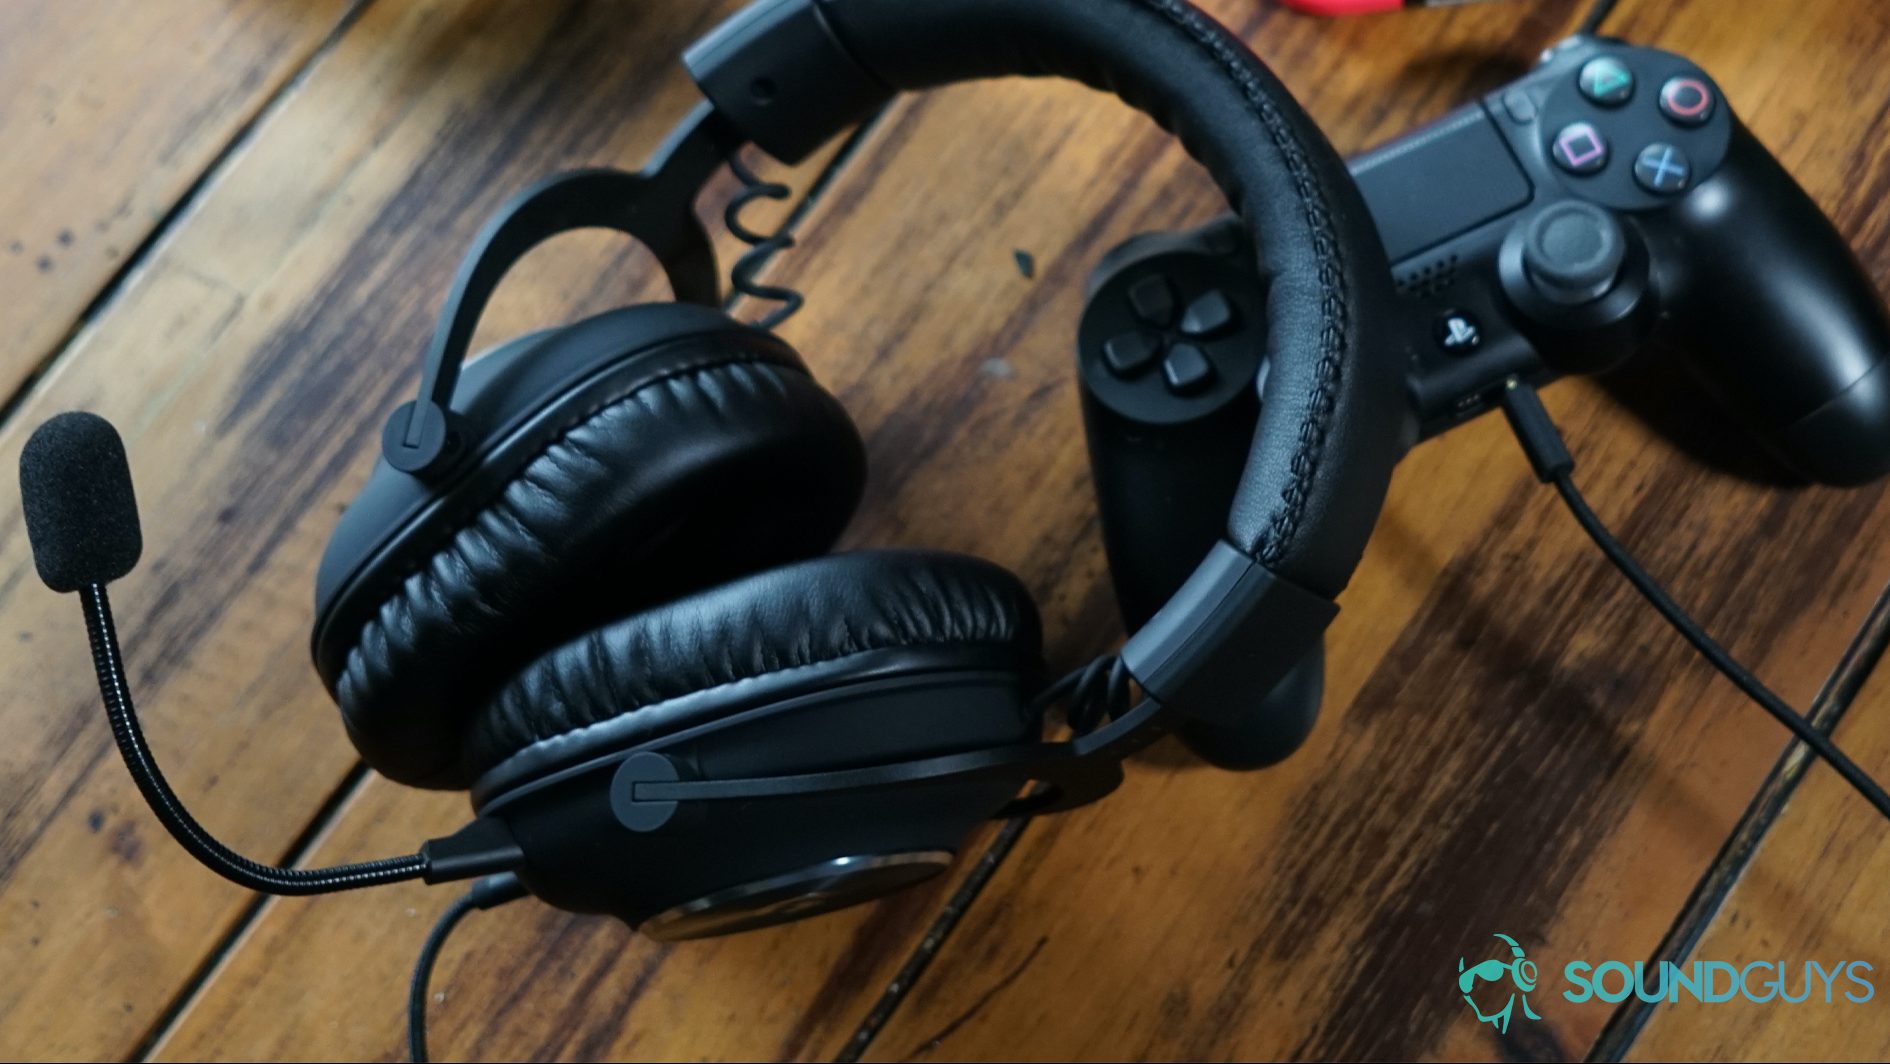 HyperX gaming headset buying guide - SoundGuys